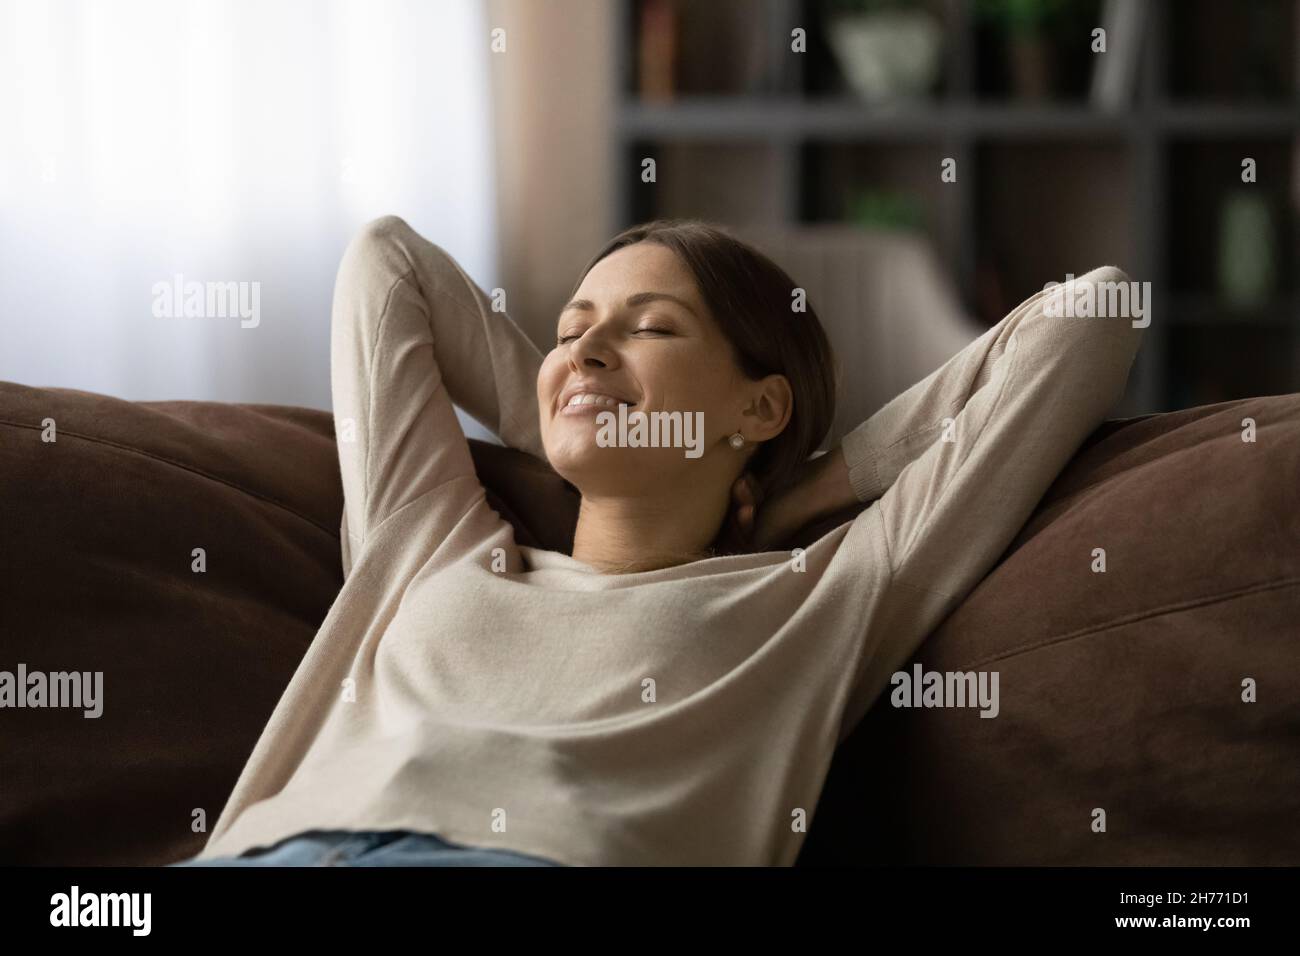 La donna si appoggia sul divano chiudendo gli occhi respirare aria fresca condizionata Foto Stock